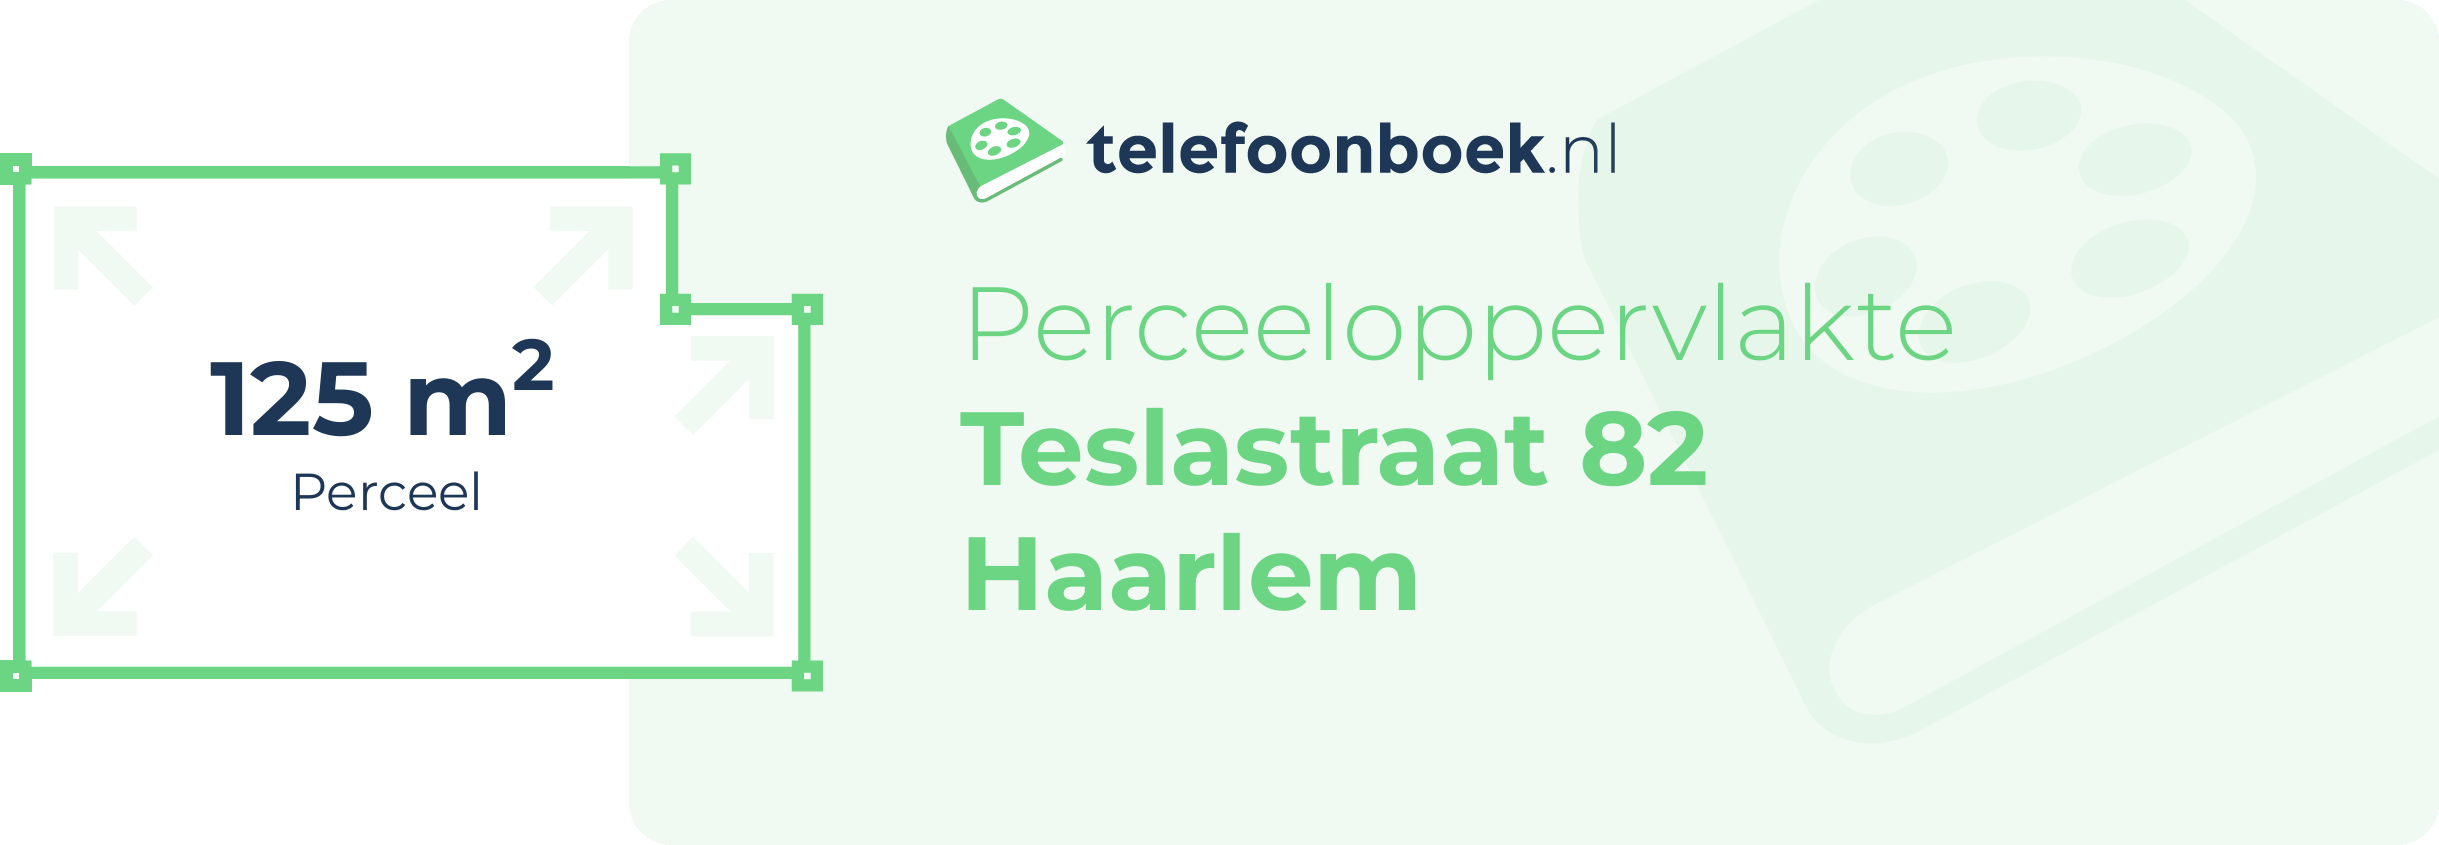 Perceeloppervlakte Teslastraat 82 Haarlem